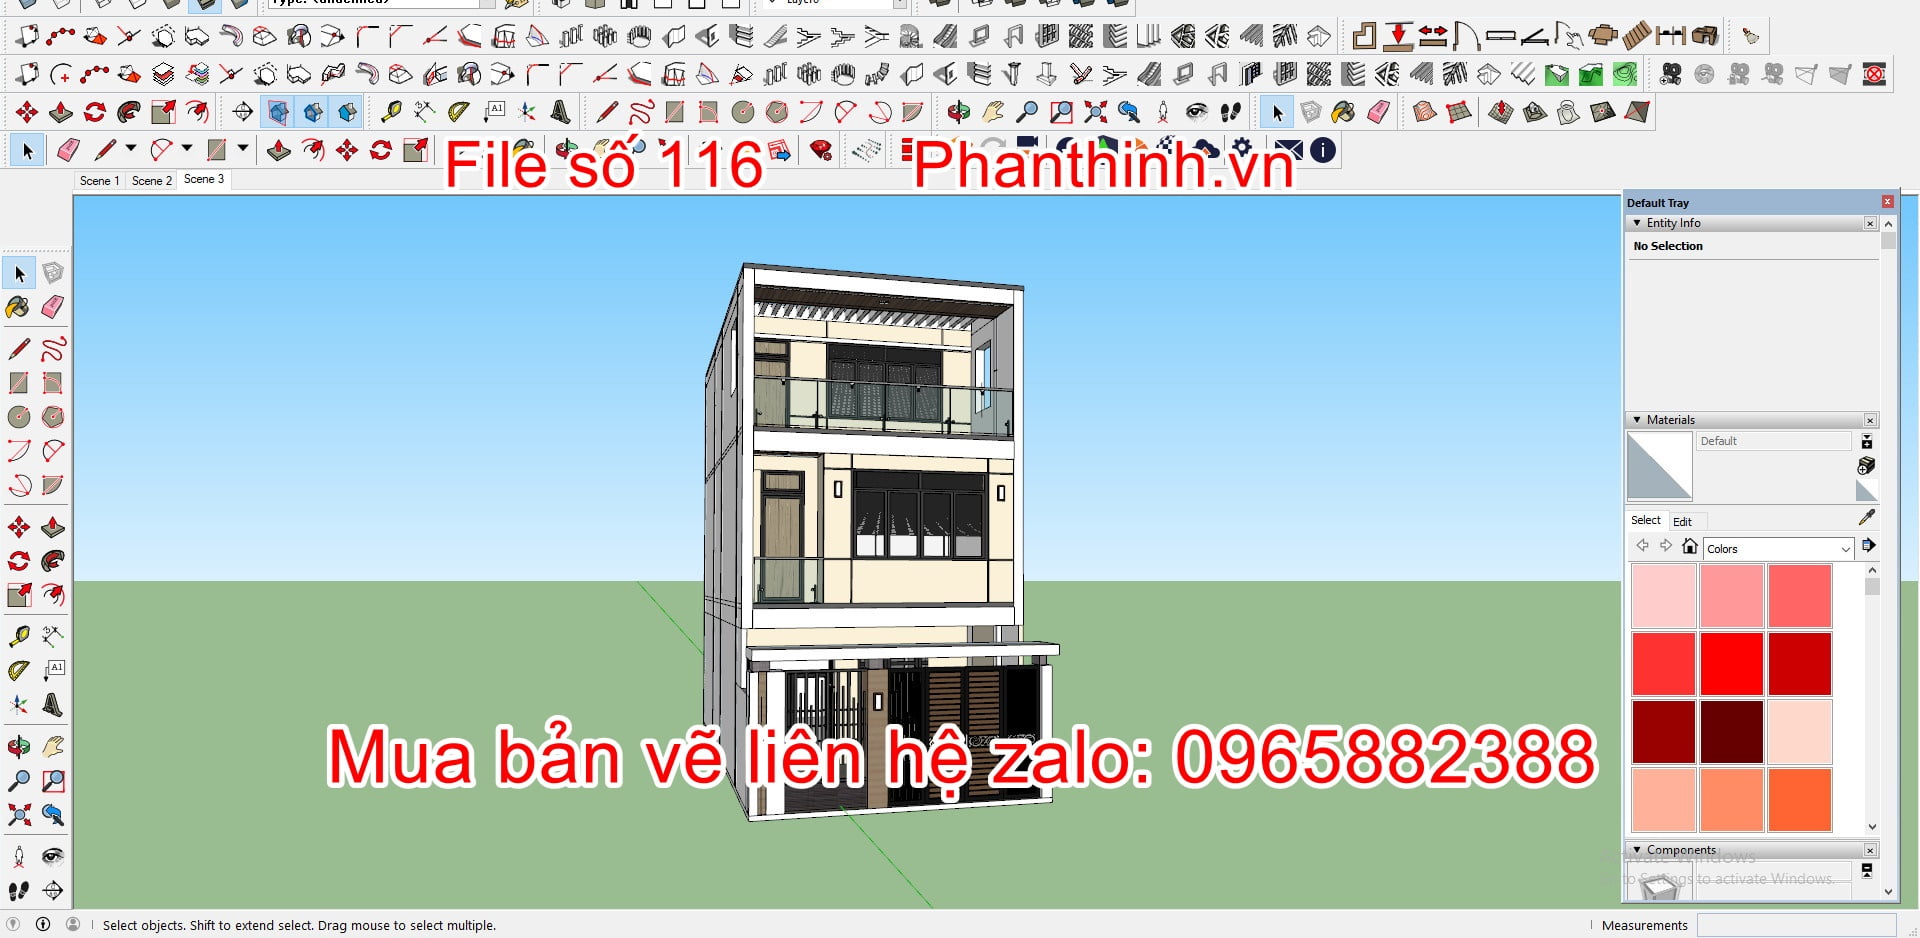 3D sketchup file bản vẽ thiết kế nhà đẹp.